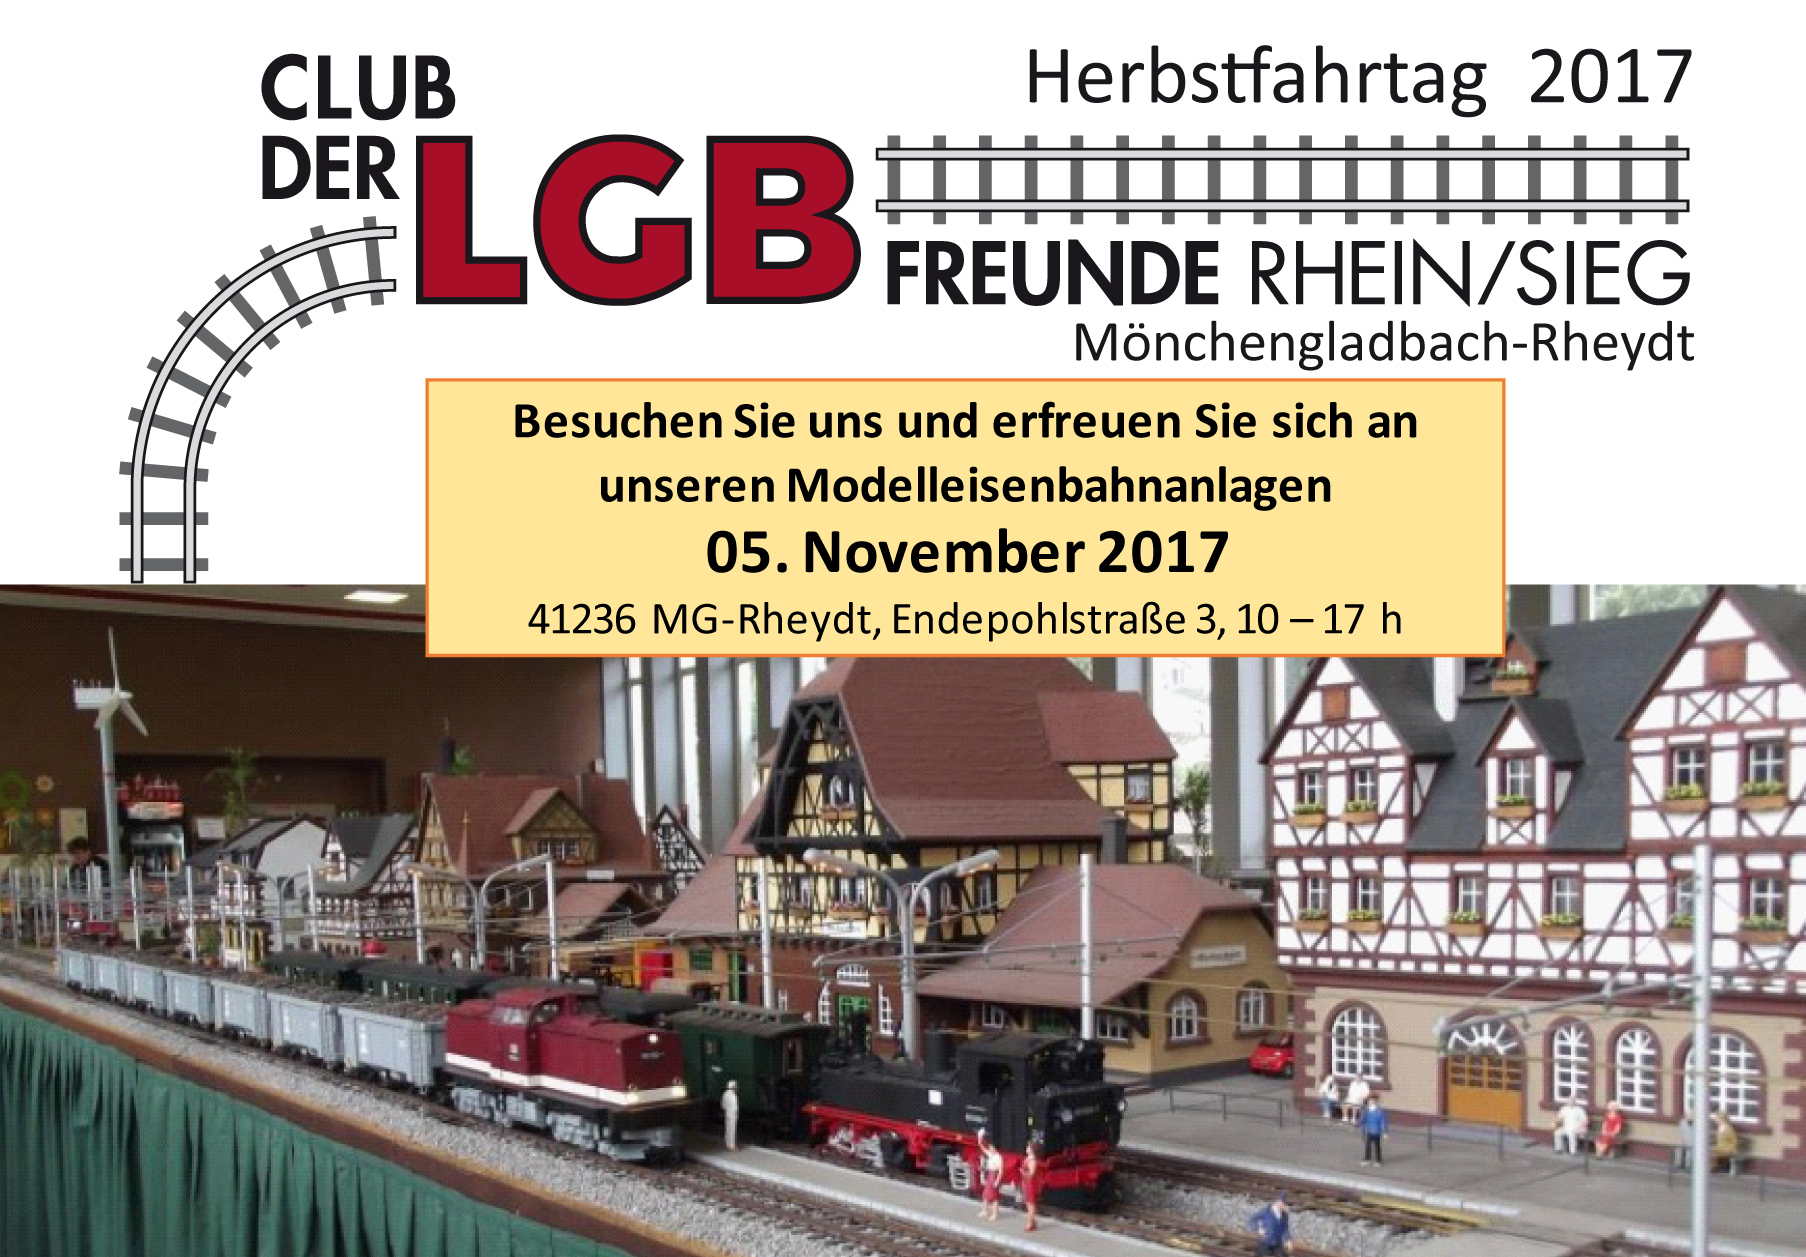 Kommen Sie zu den Herbstfahrtagen am 05. November 2017 in unser Clubdomizil nach Mnchengladbach/Rheydt